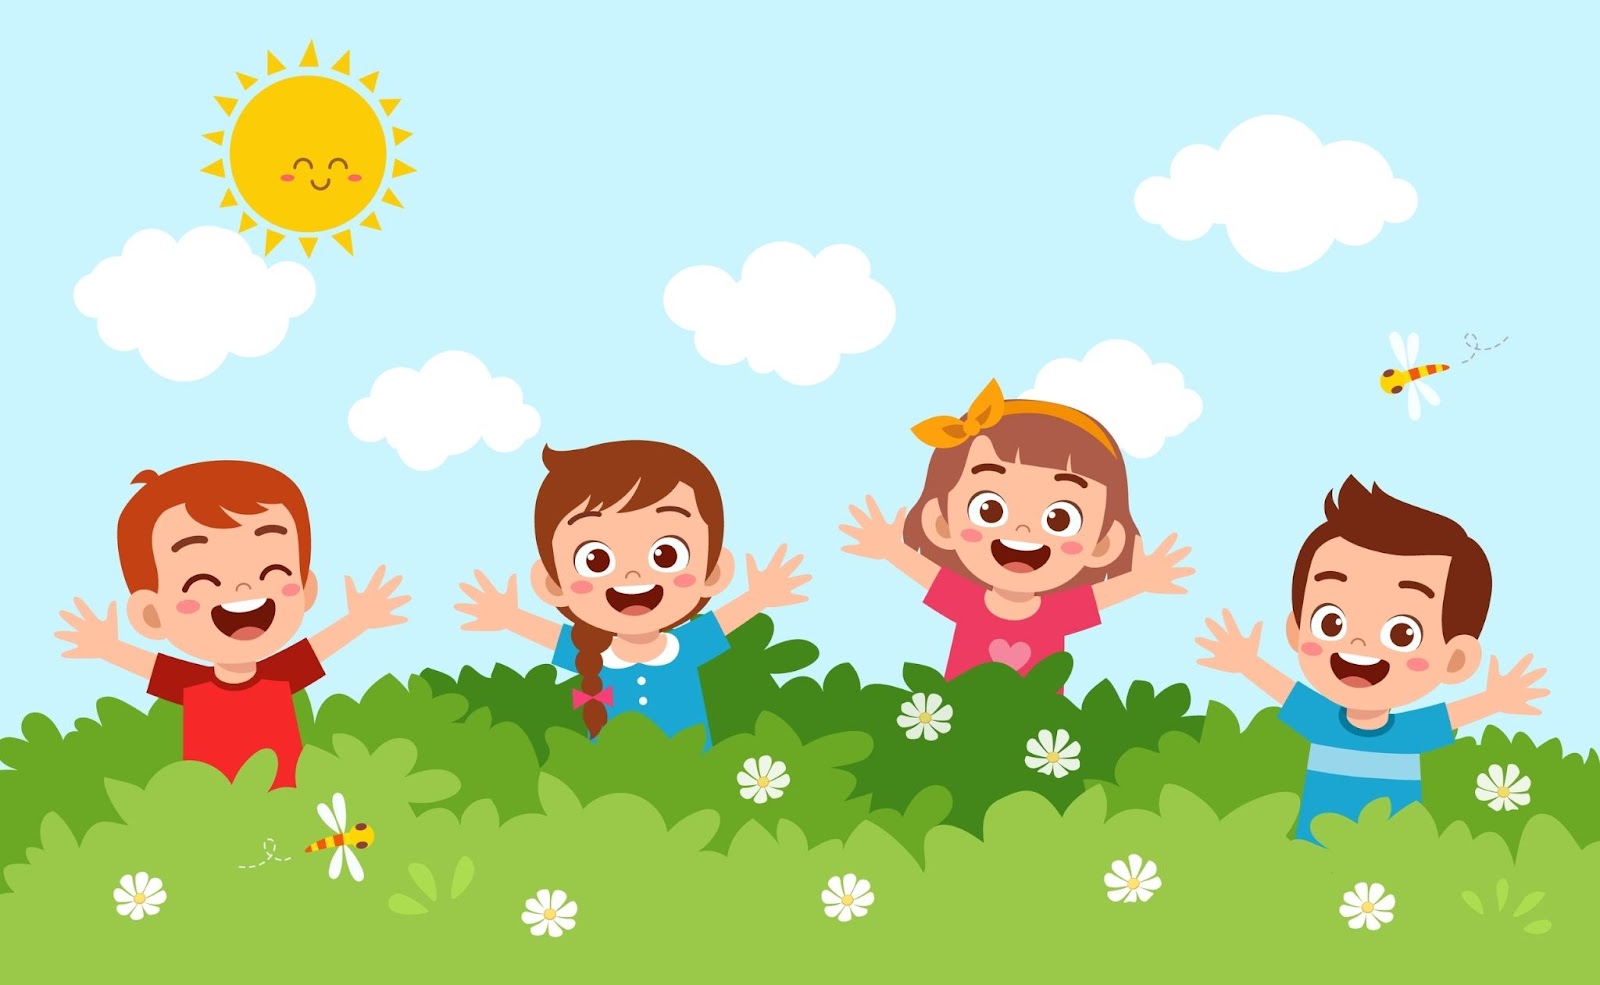 משחקים בטבע לטו בשבת המספקים הזדמנות לילדים להתחבר לטבע תוך הנאה ופעילות אקטיבית